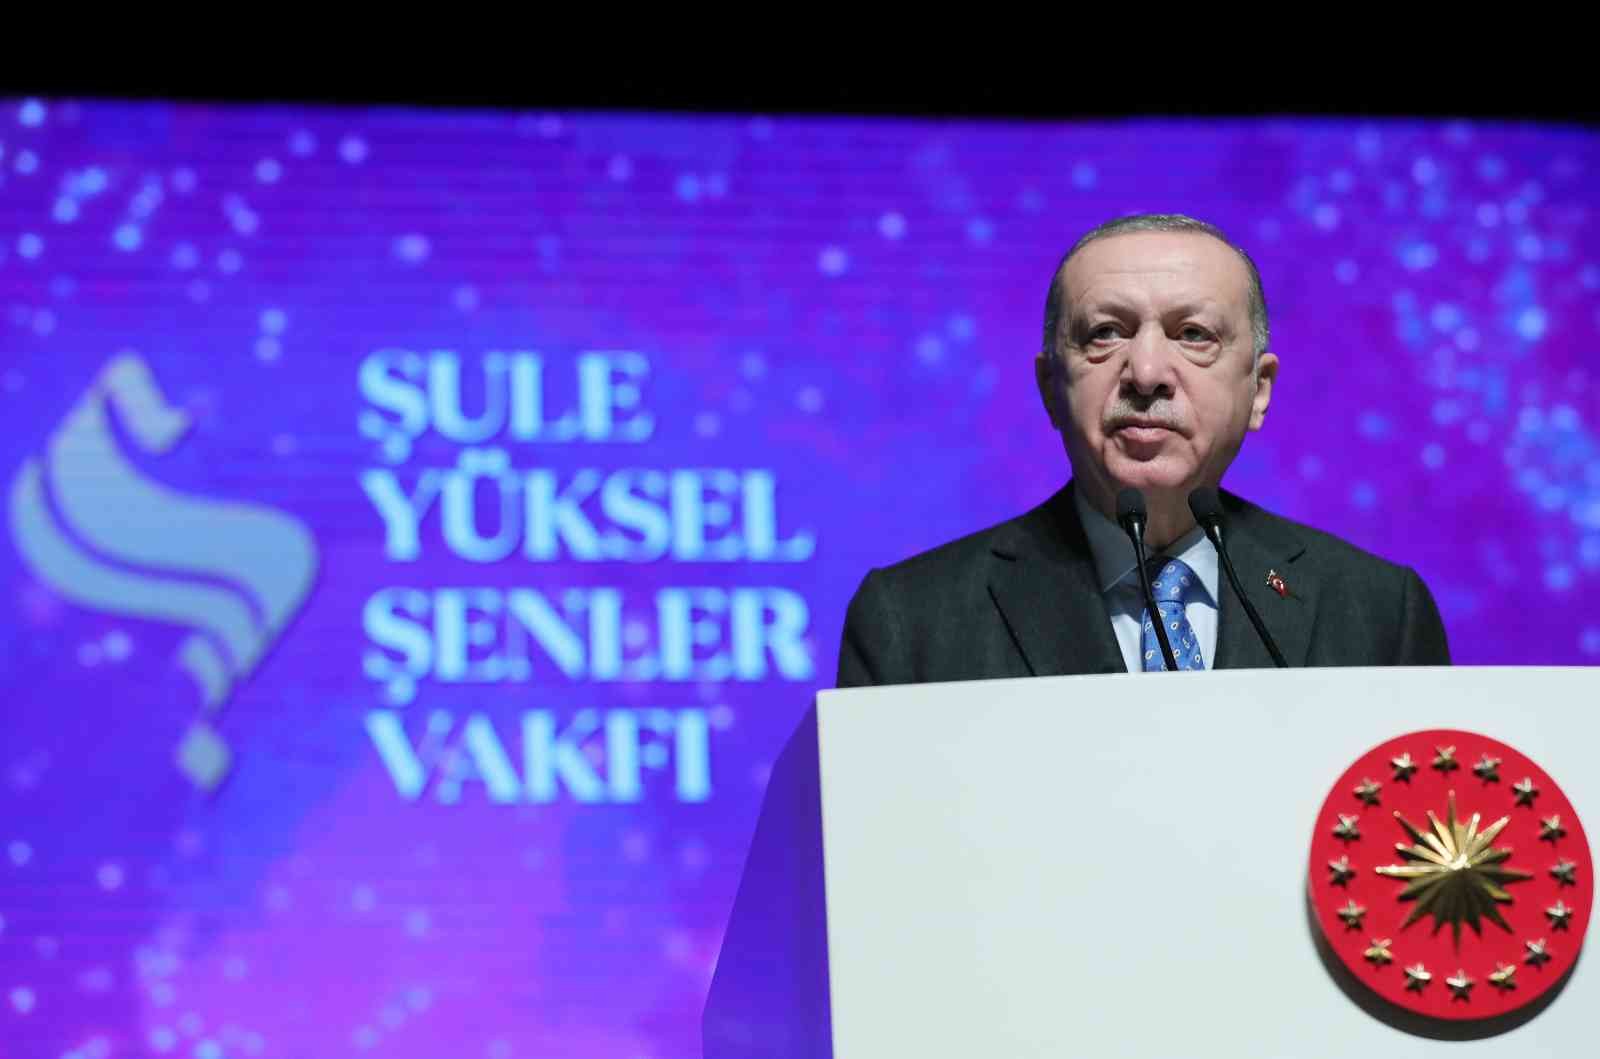 Cumhurbaşkanı Recep Tayyip Erdoğan, Şule Yüksel Şenler Vakfı Tanıtımı ve “Şule” Belgeseli gösteriminde yaptığı konuşmada “Biz bugün burada fikrin ...